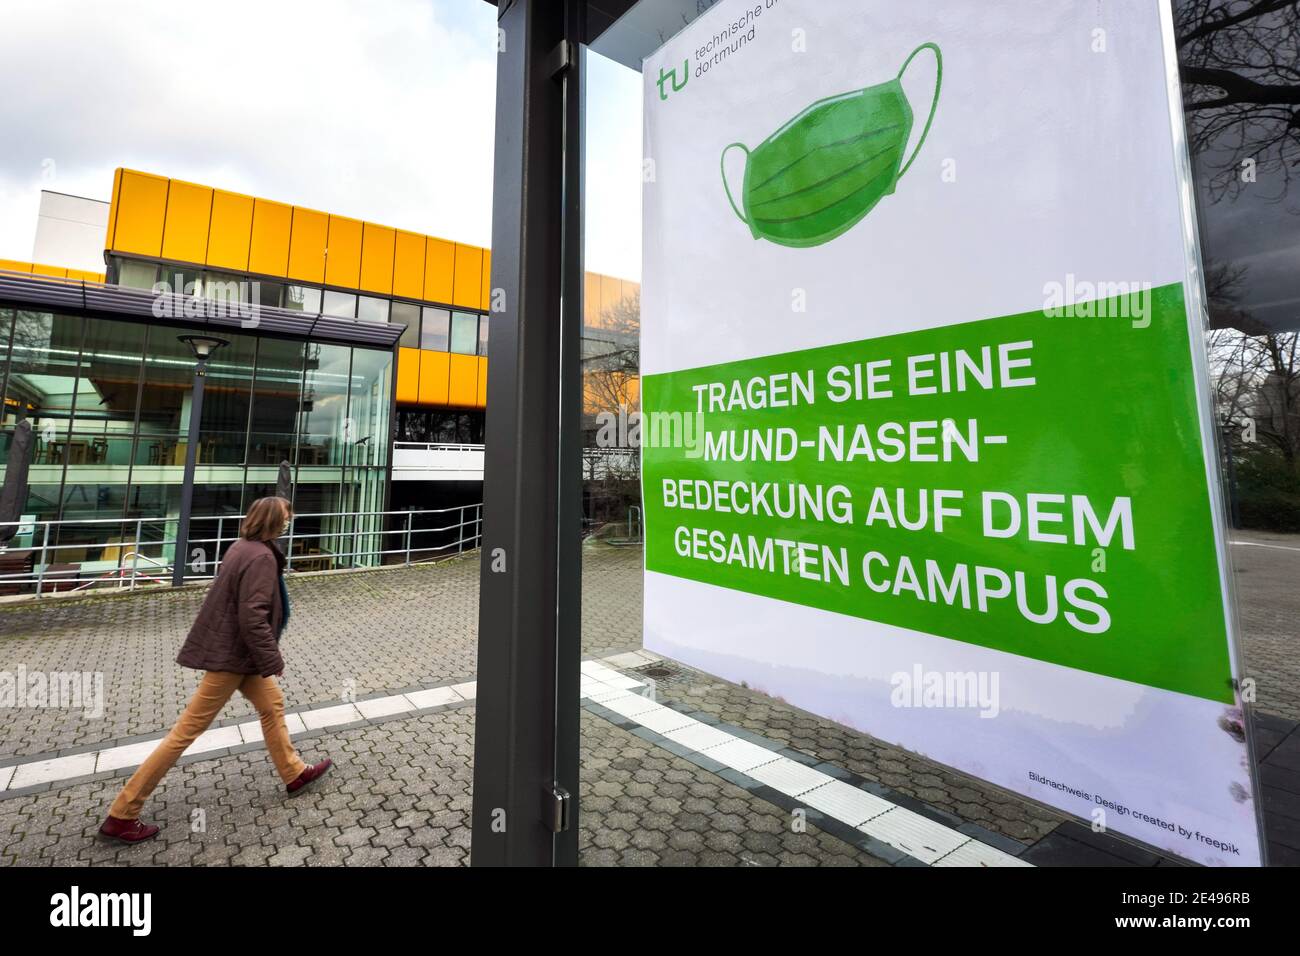 Hinweis zum tragen einer Mund-Nasen-Beeckung auf dem Campus der Technischen Universität Dortmund, NRW, Deutschland, 22.1.2021 Banque D'Images